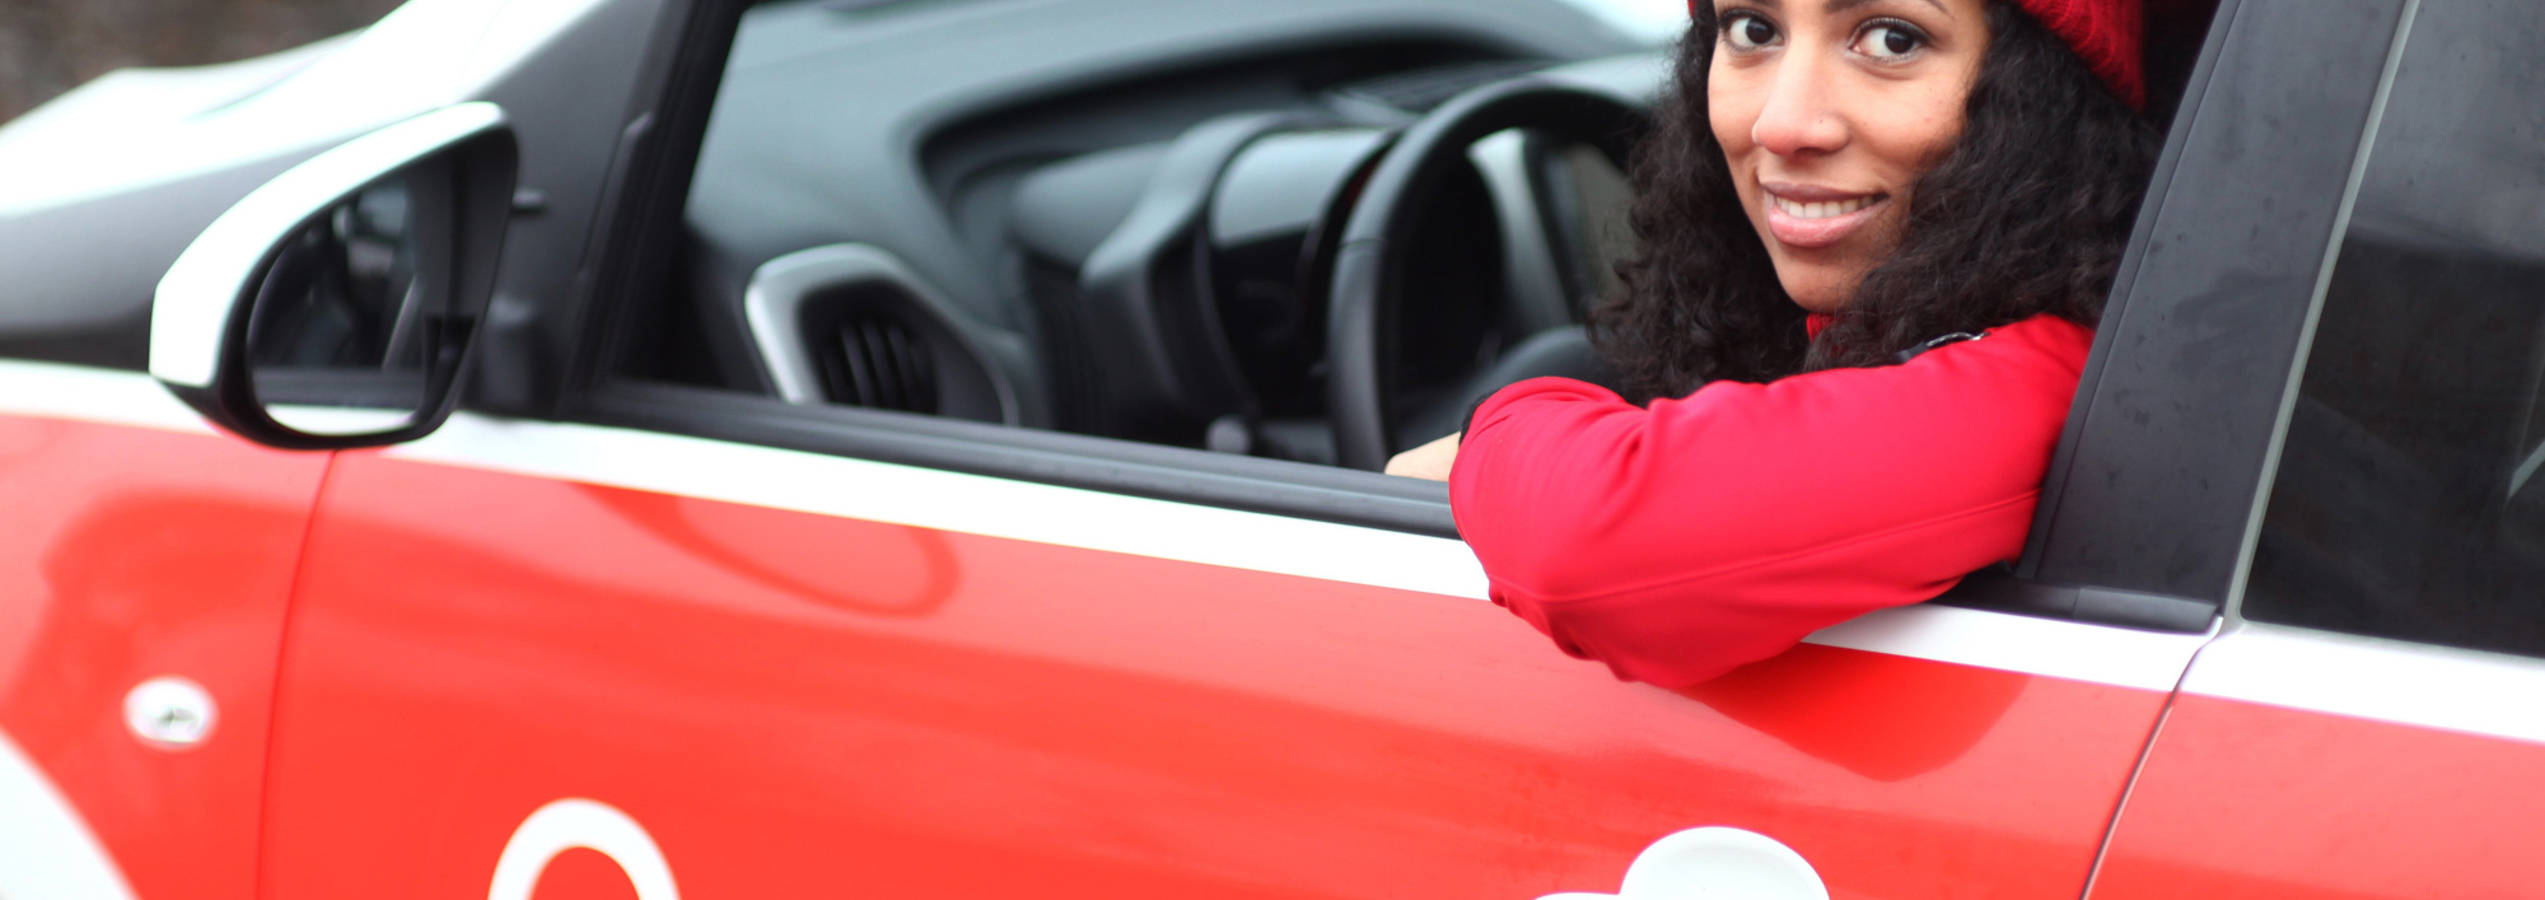 Caritas Altenpflegerin lächelt aus dem Autofenster heraus | © Caritas München